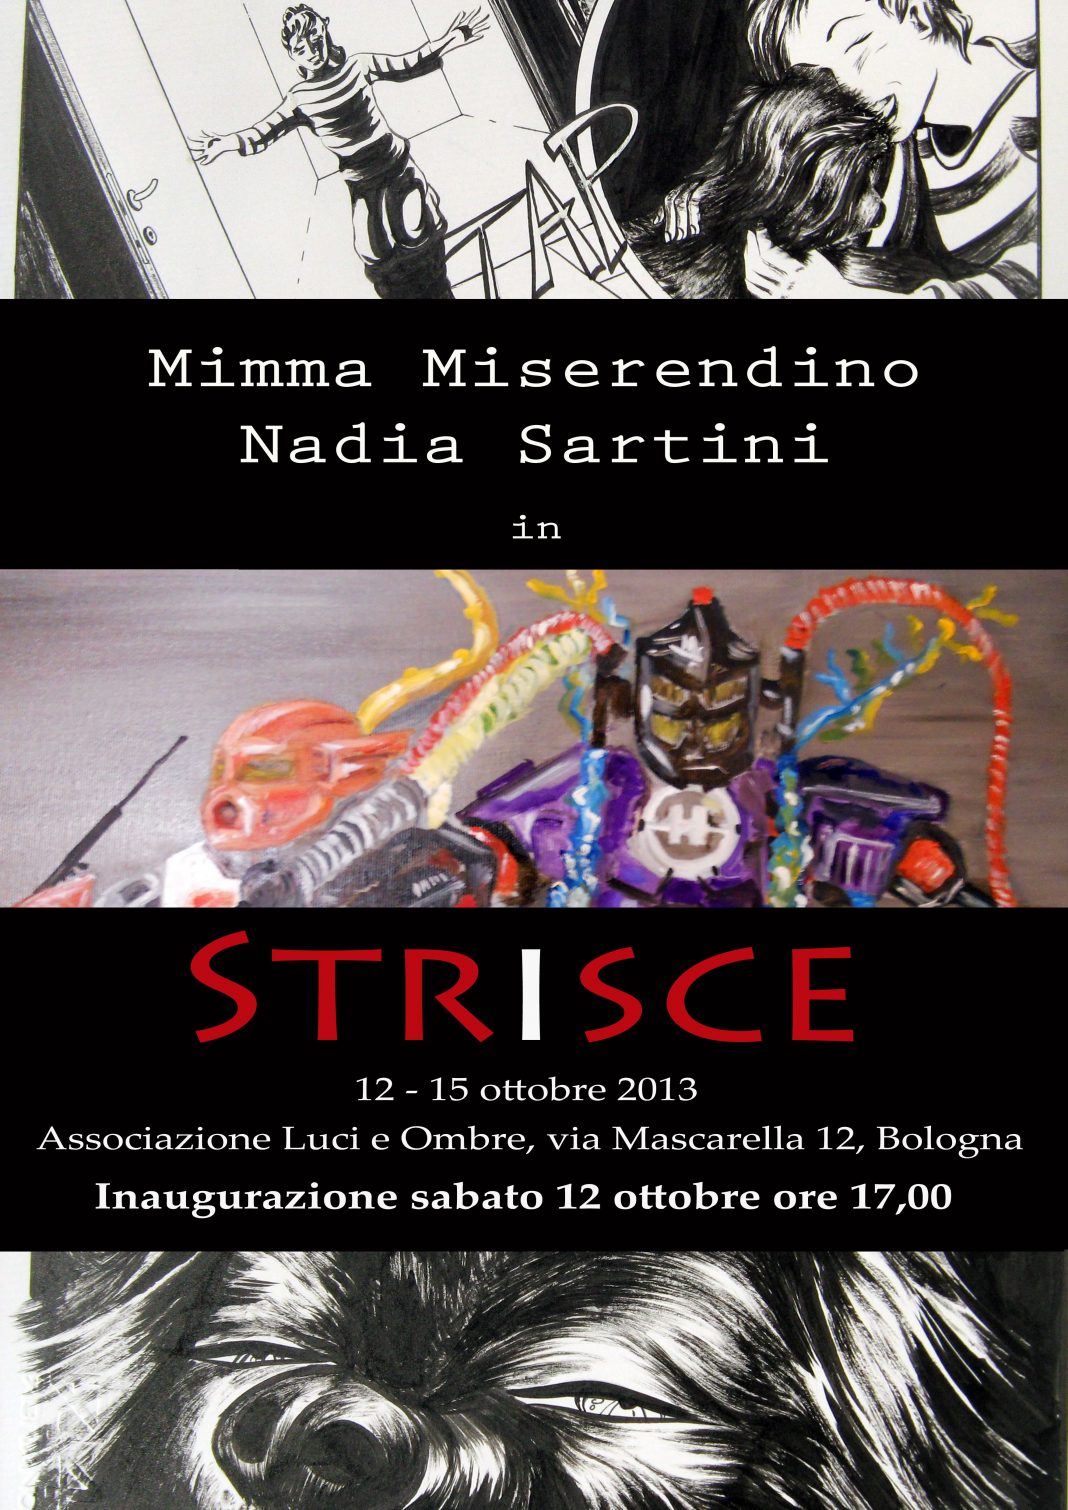 Mimma Miserendino / Nadia Sartini – Striscehttps://www.exibart.com/repository/media/eventi/2013/09/mimma-miserendino-nadia-sartini-8211-strisce-1068x1510.jpg